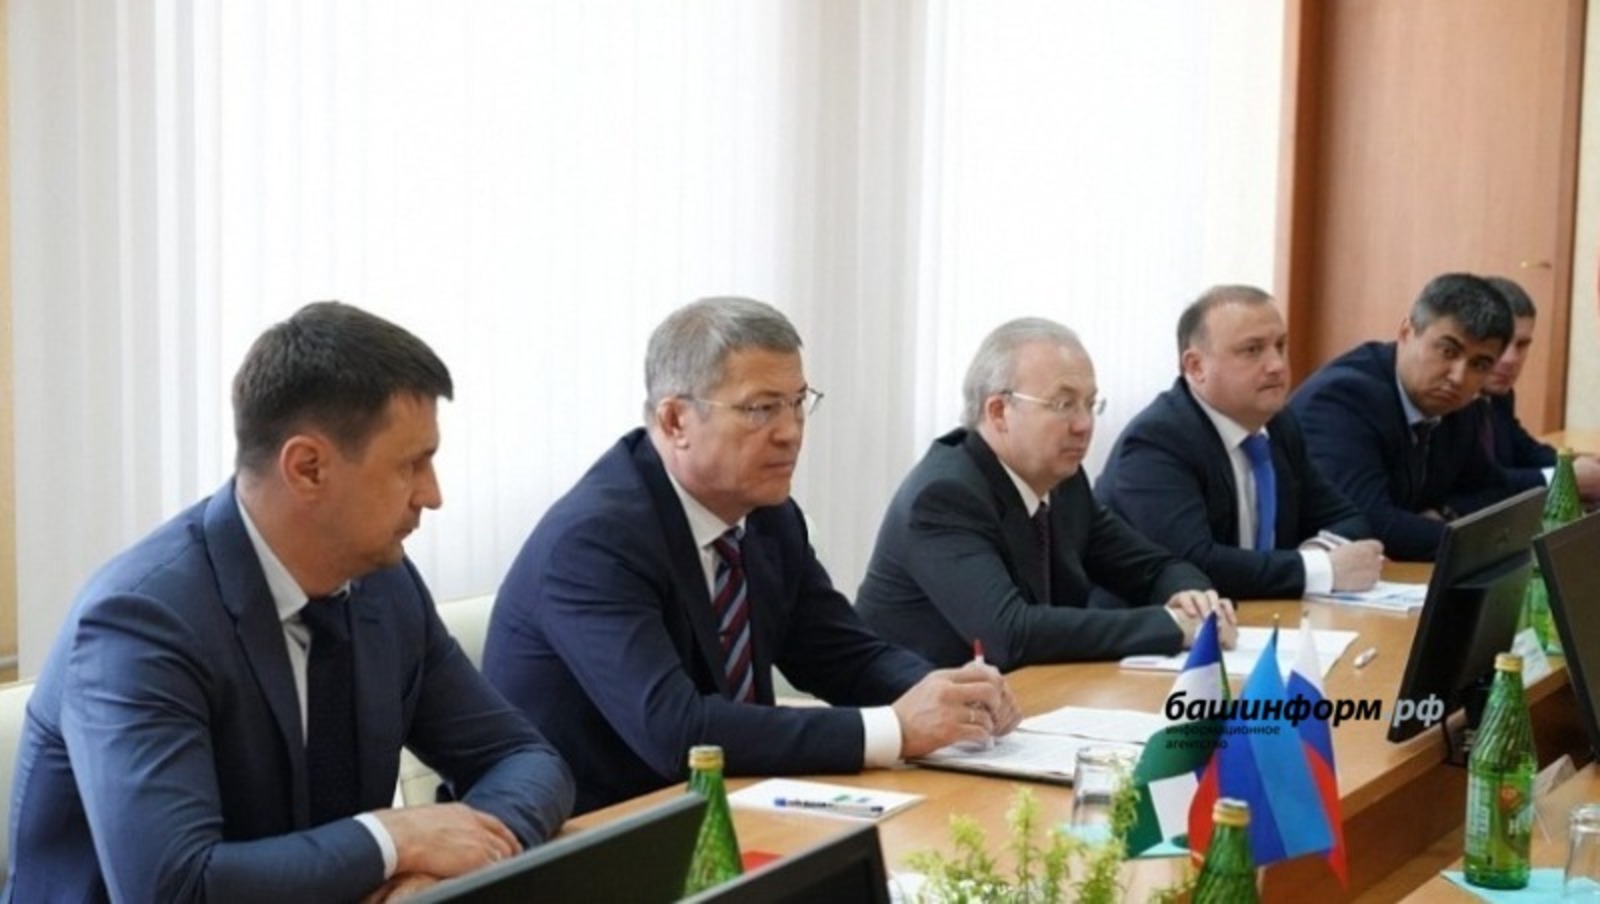 Эксперты выразили свое мнение о визите Хабирова в Луганск